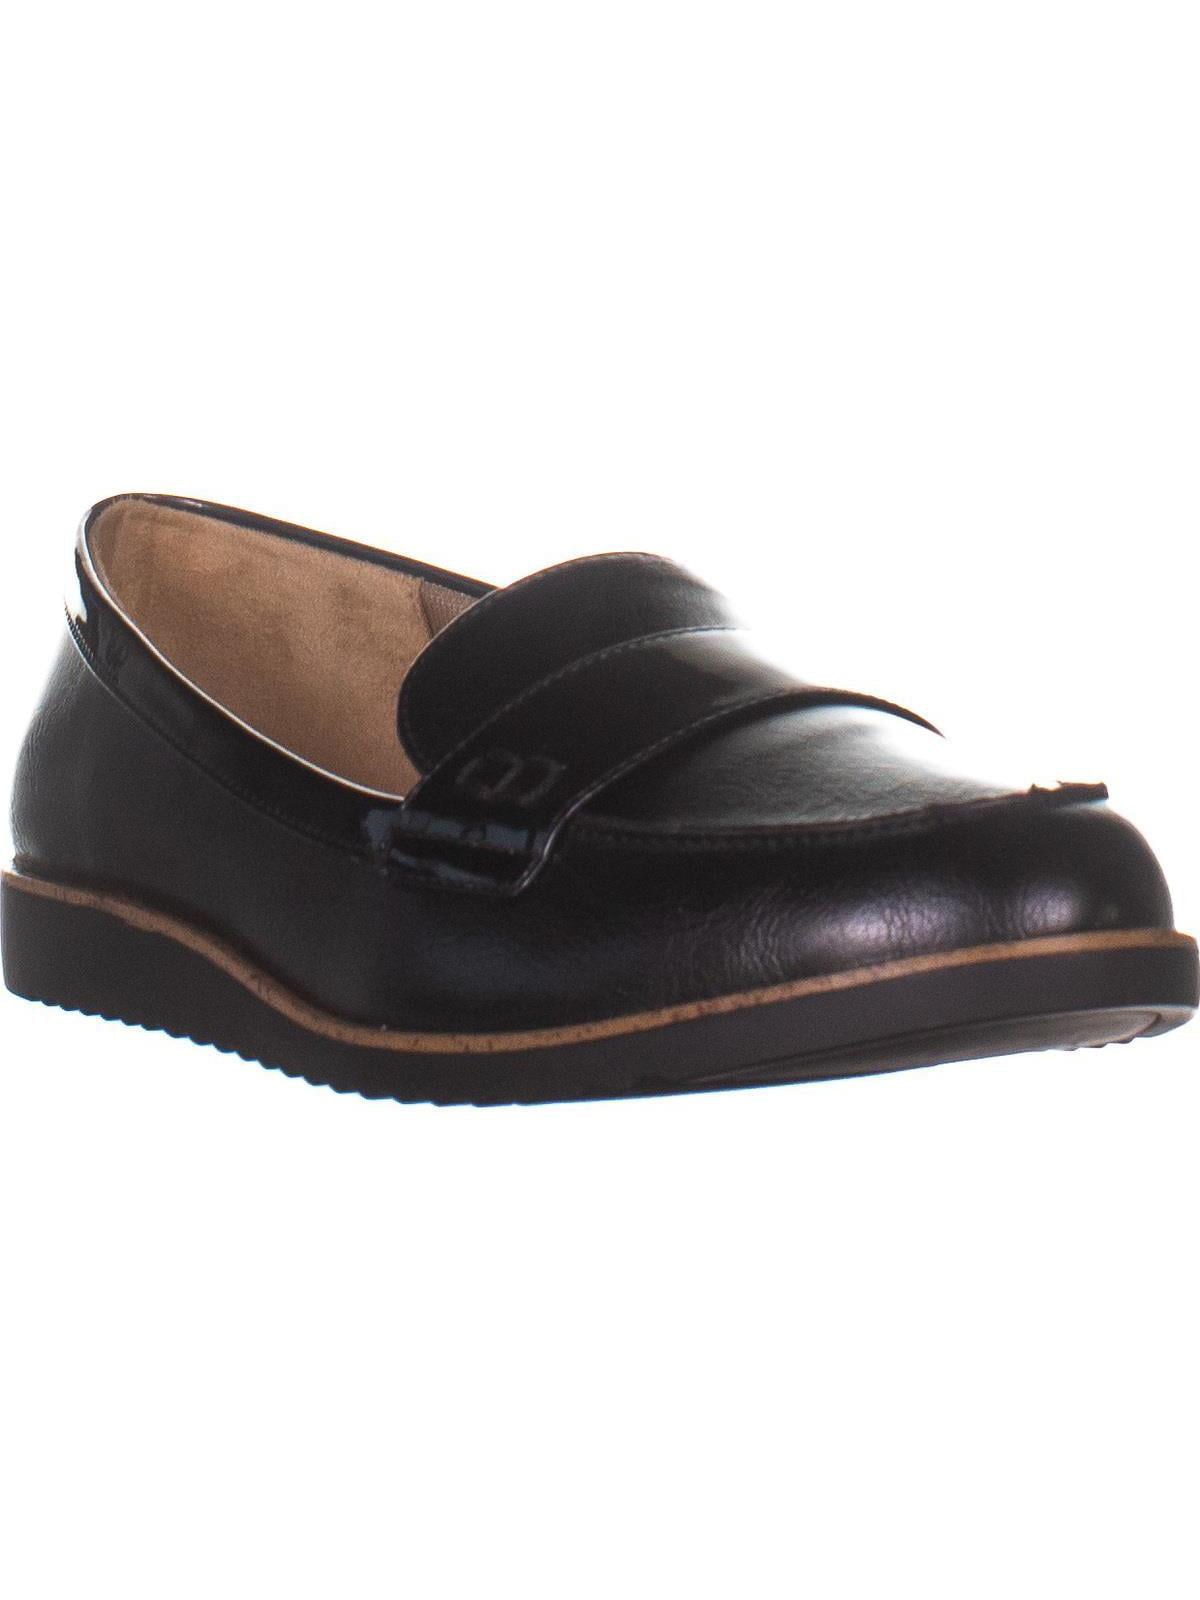 LifeStride Zee Flat Loafers, Black | Walmart Canada